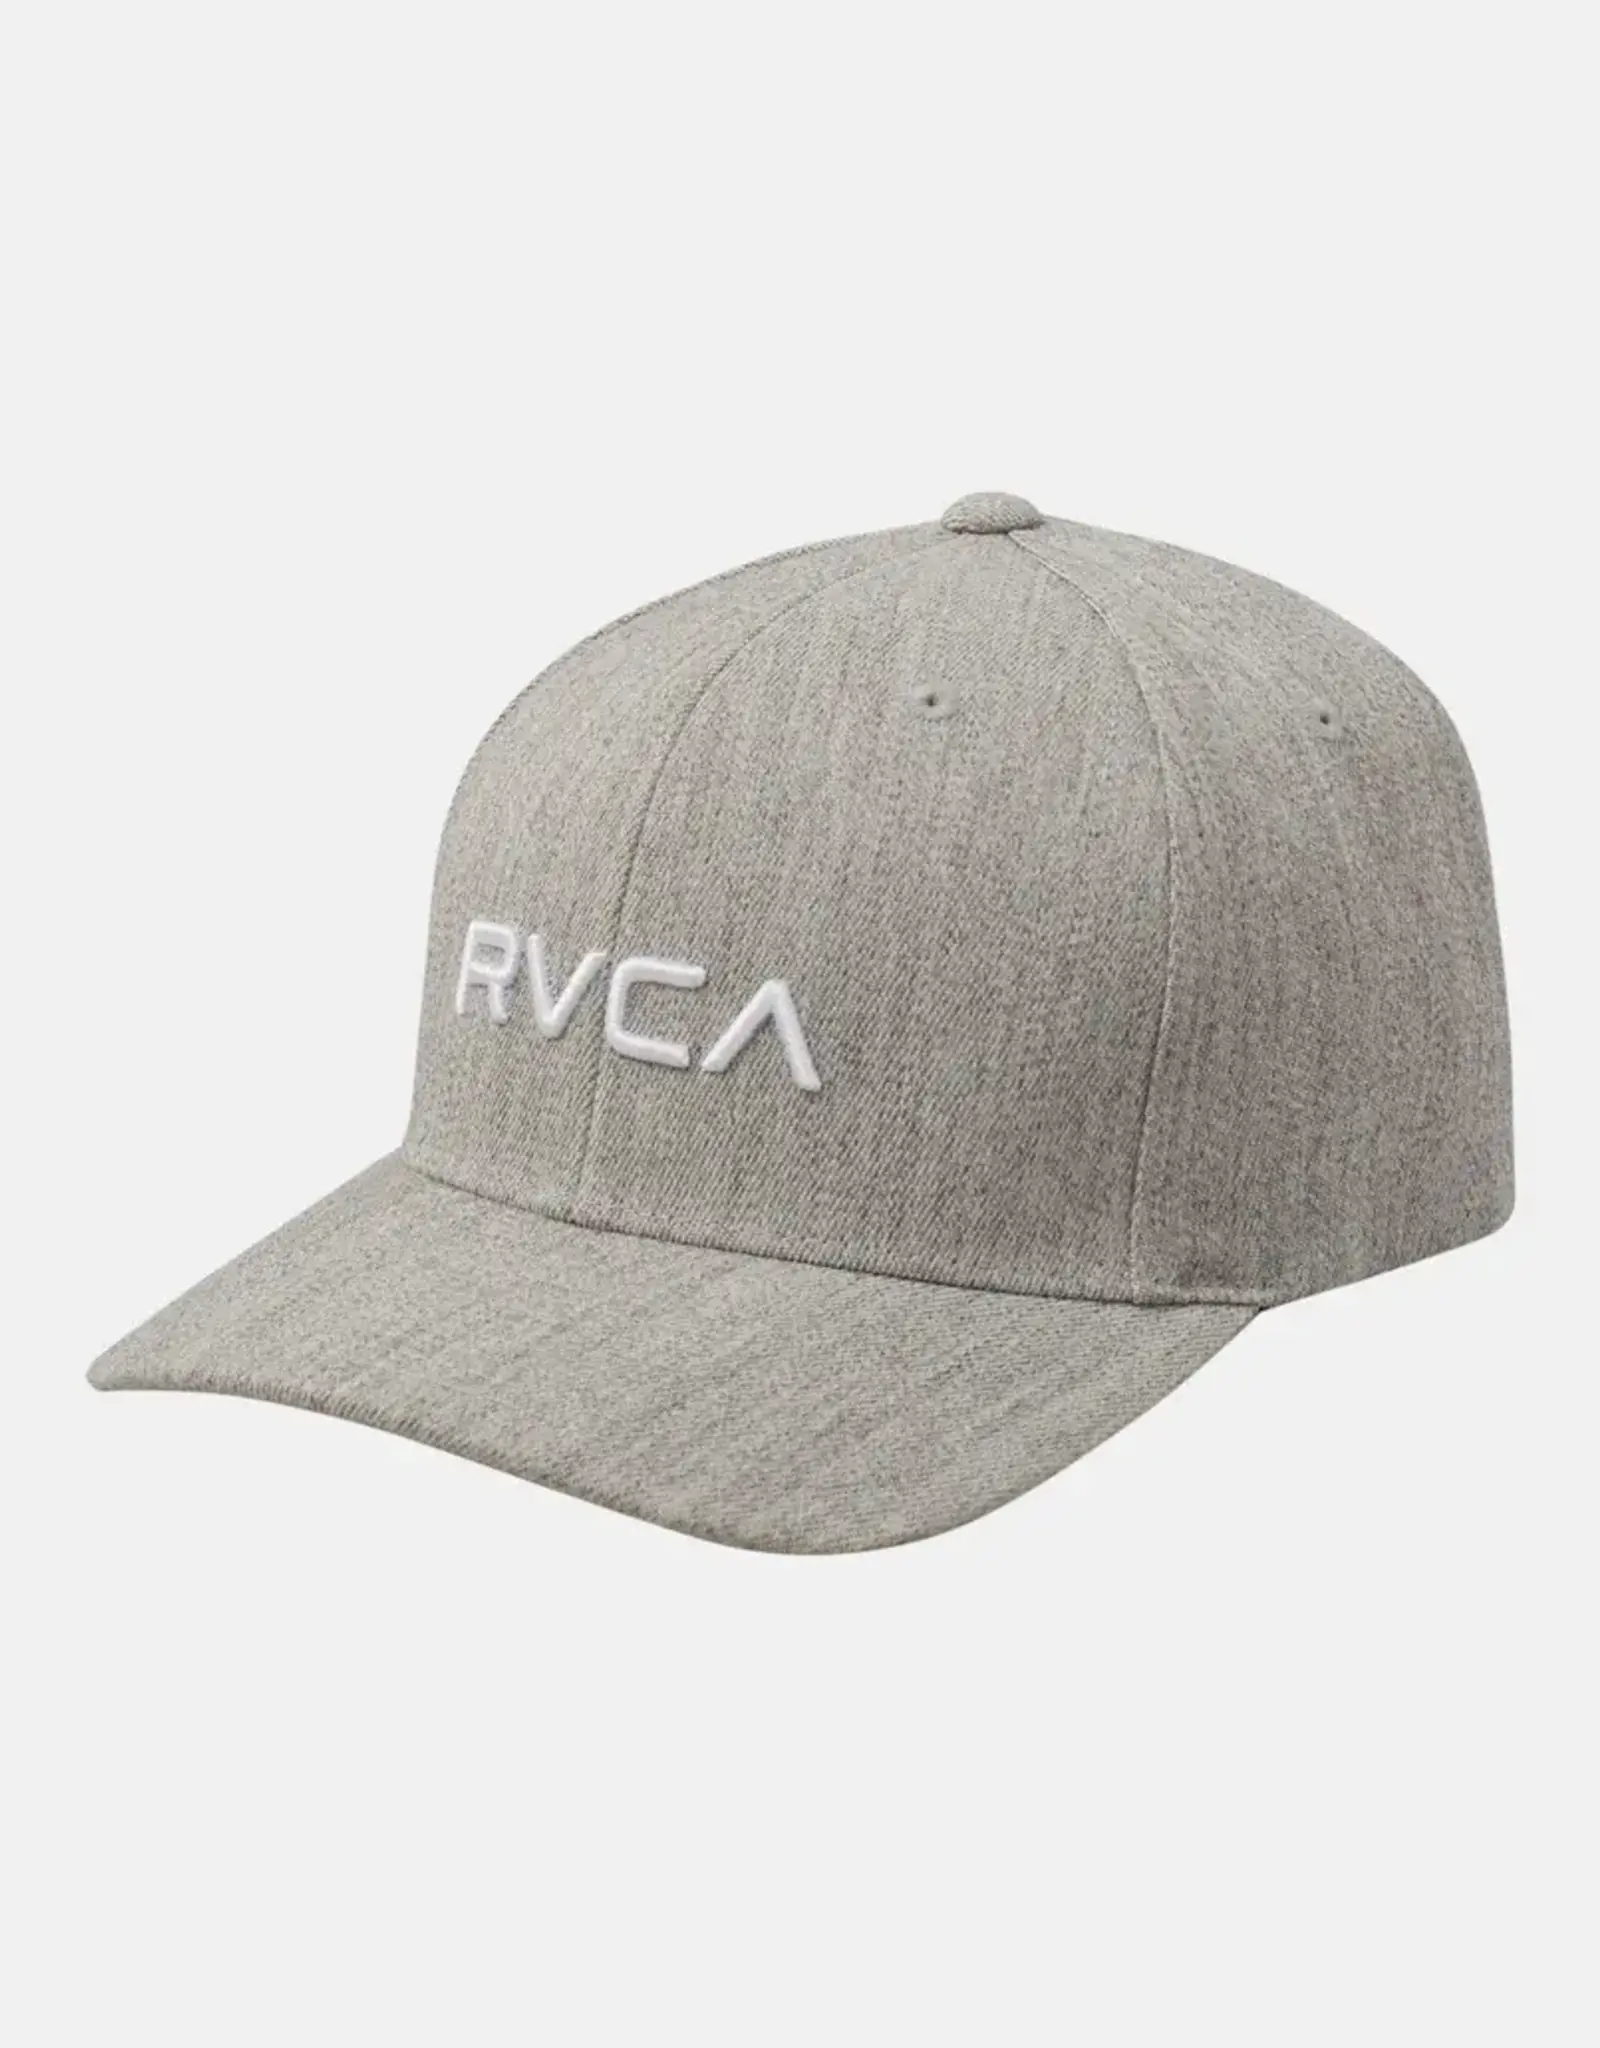 RVCA RVCA FLEX FIT HAT